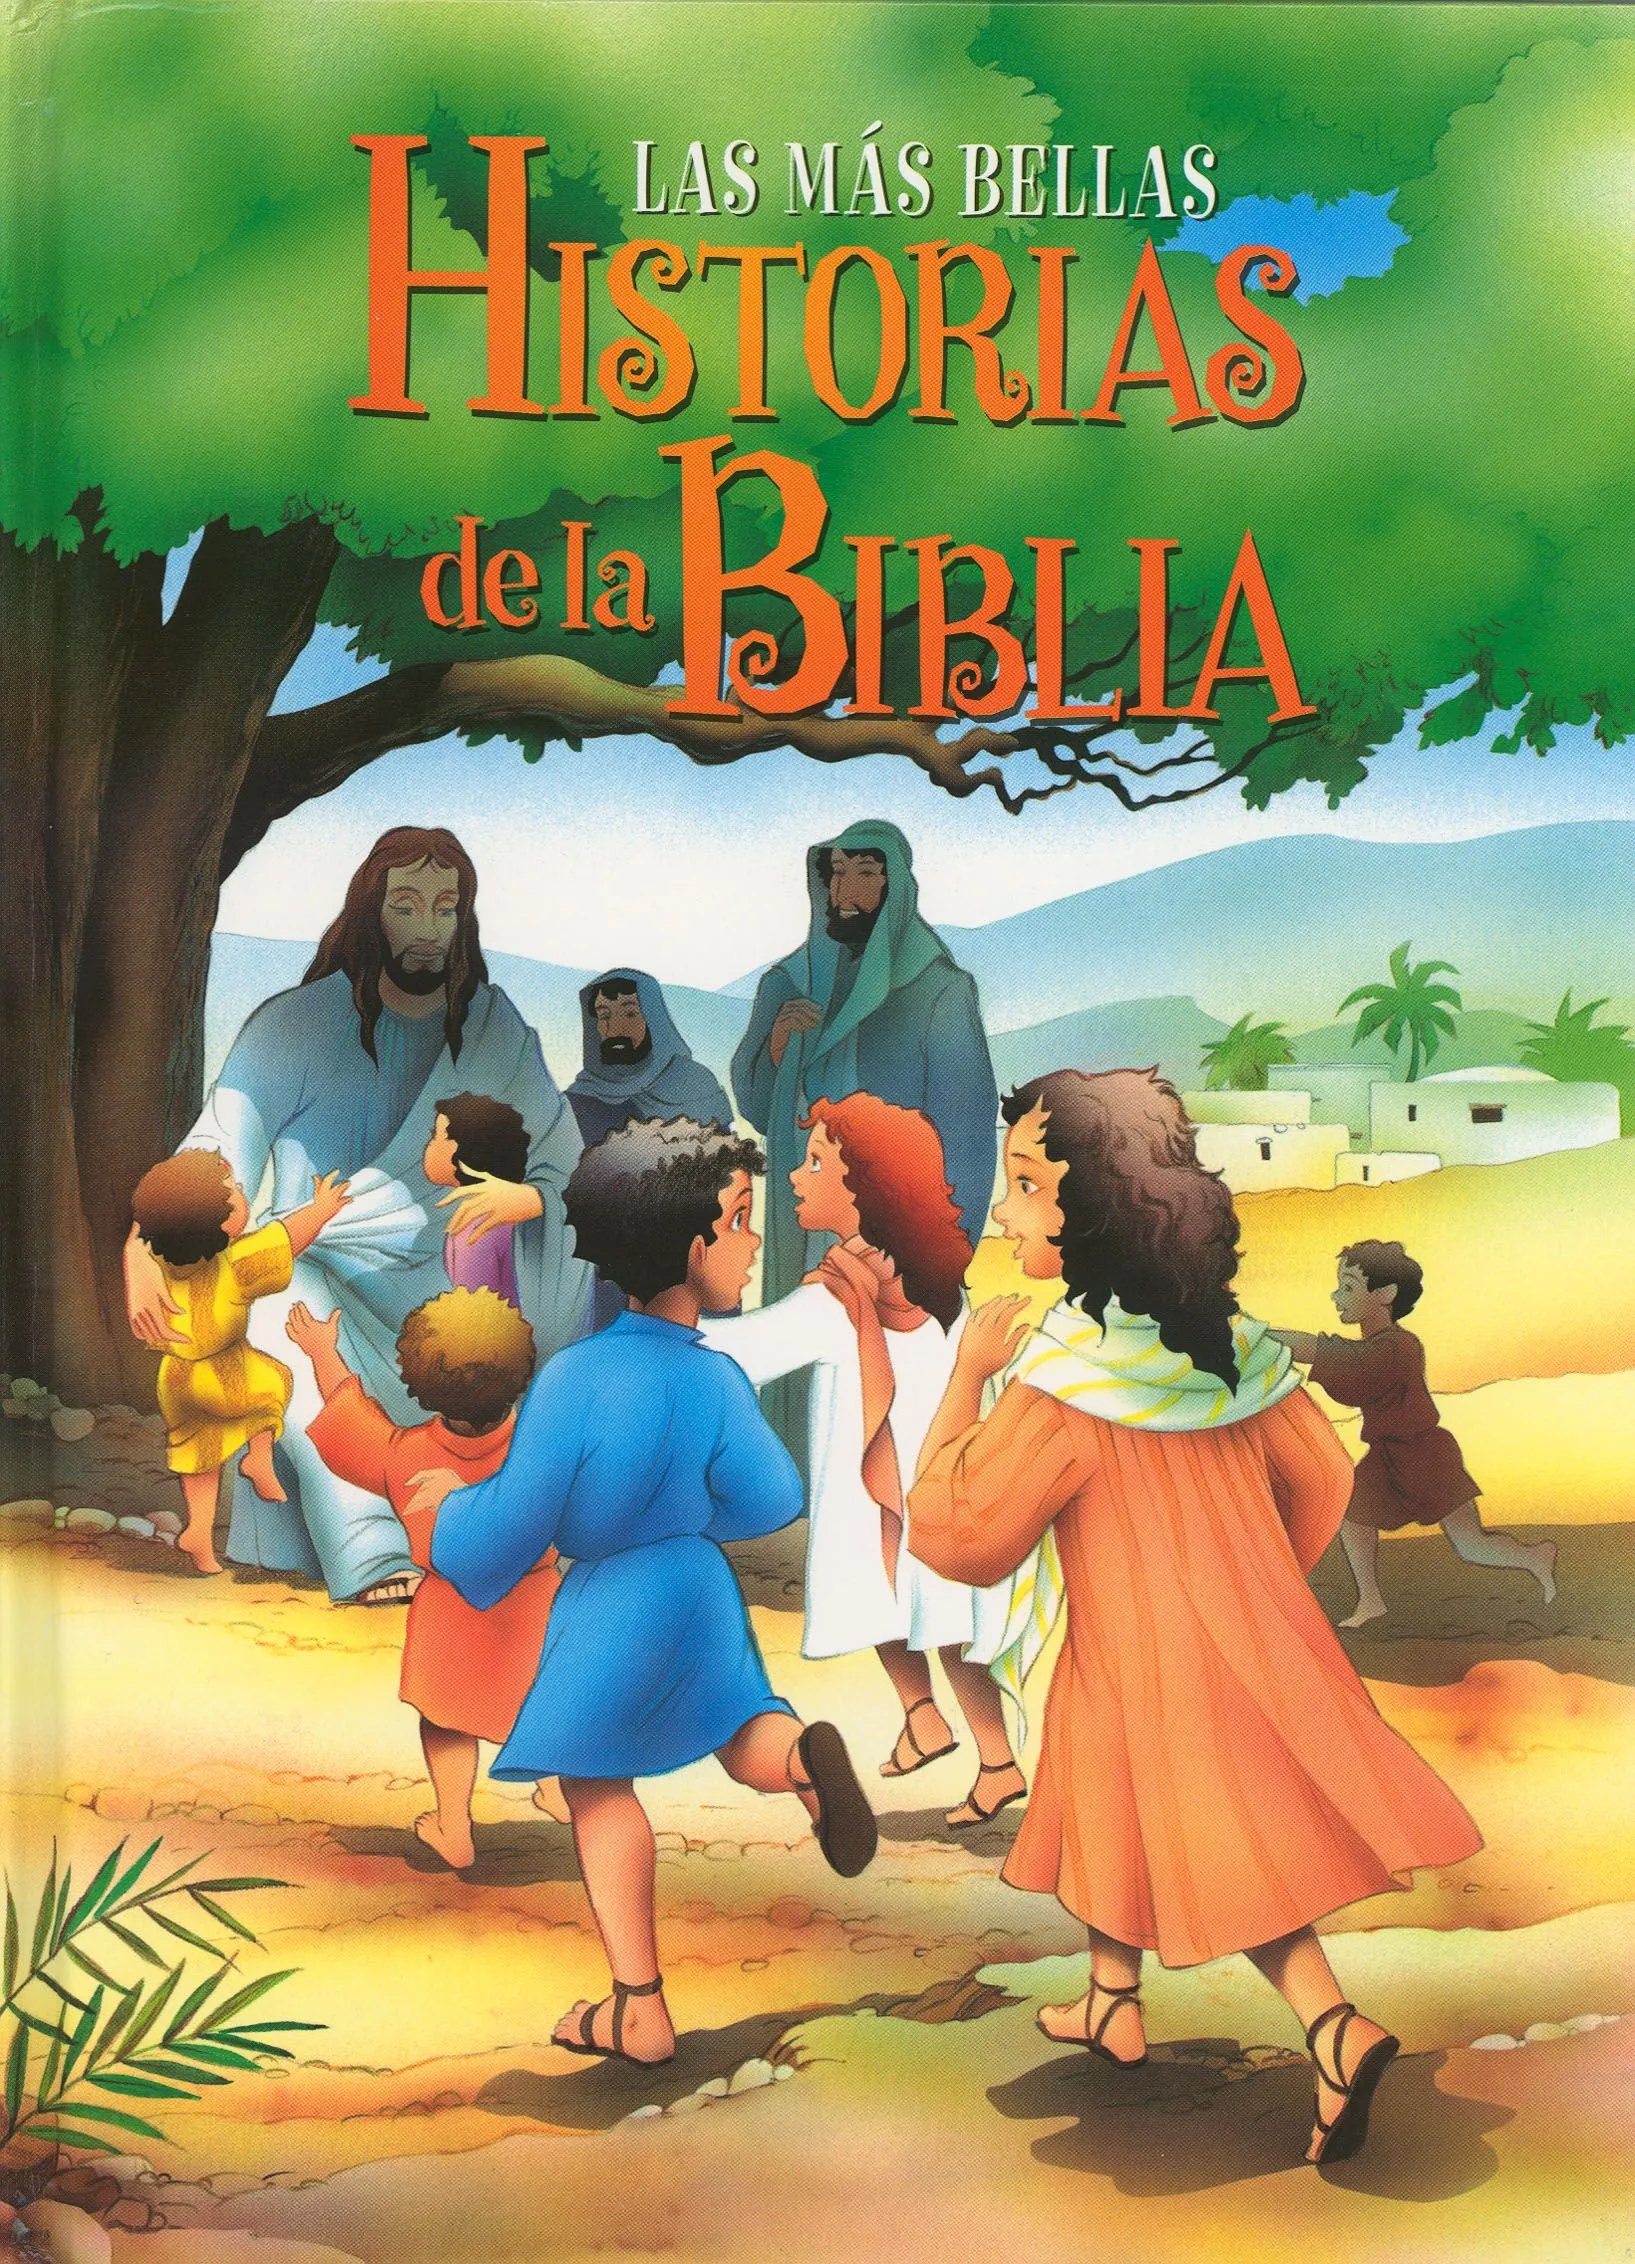 Recursos para niños (Biblia, historias, dibujos, juegos) | IASD ...